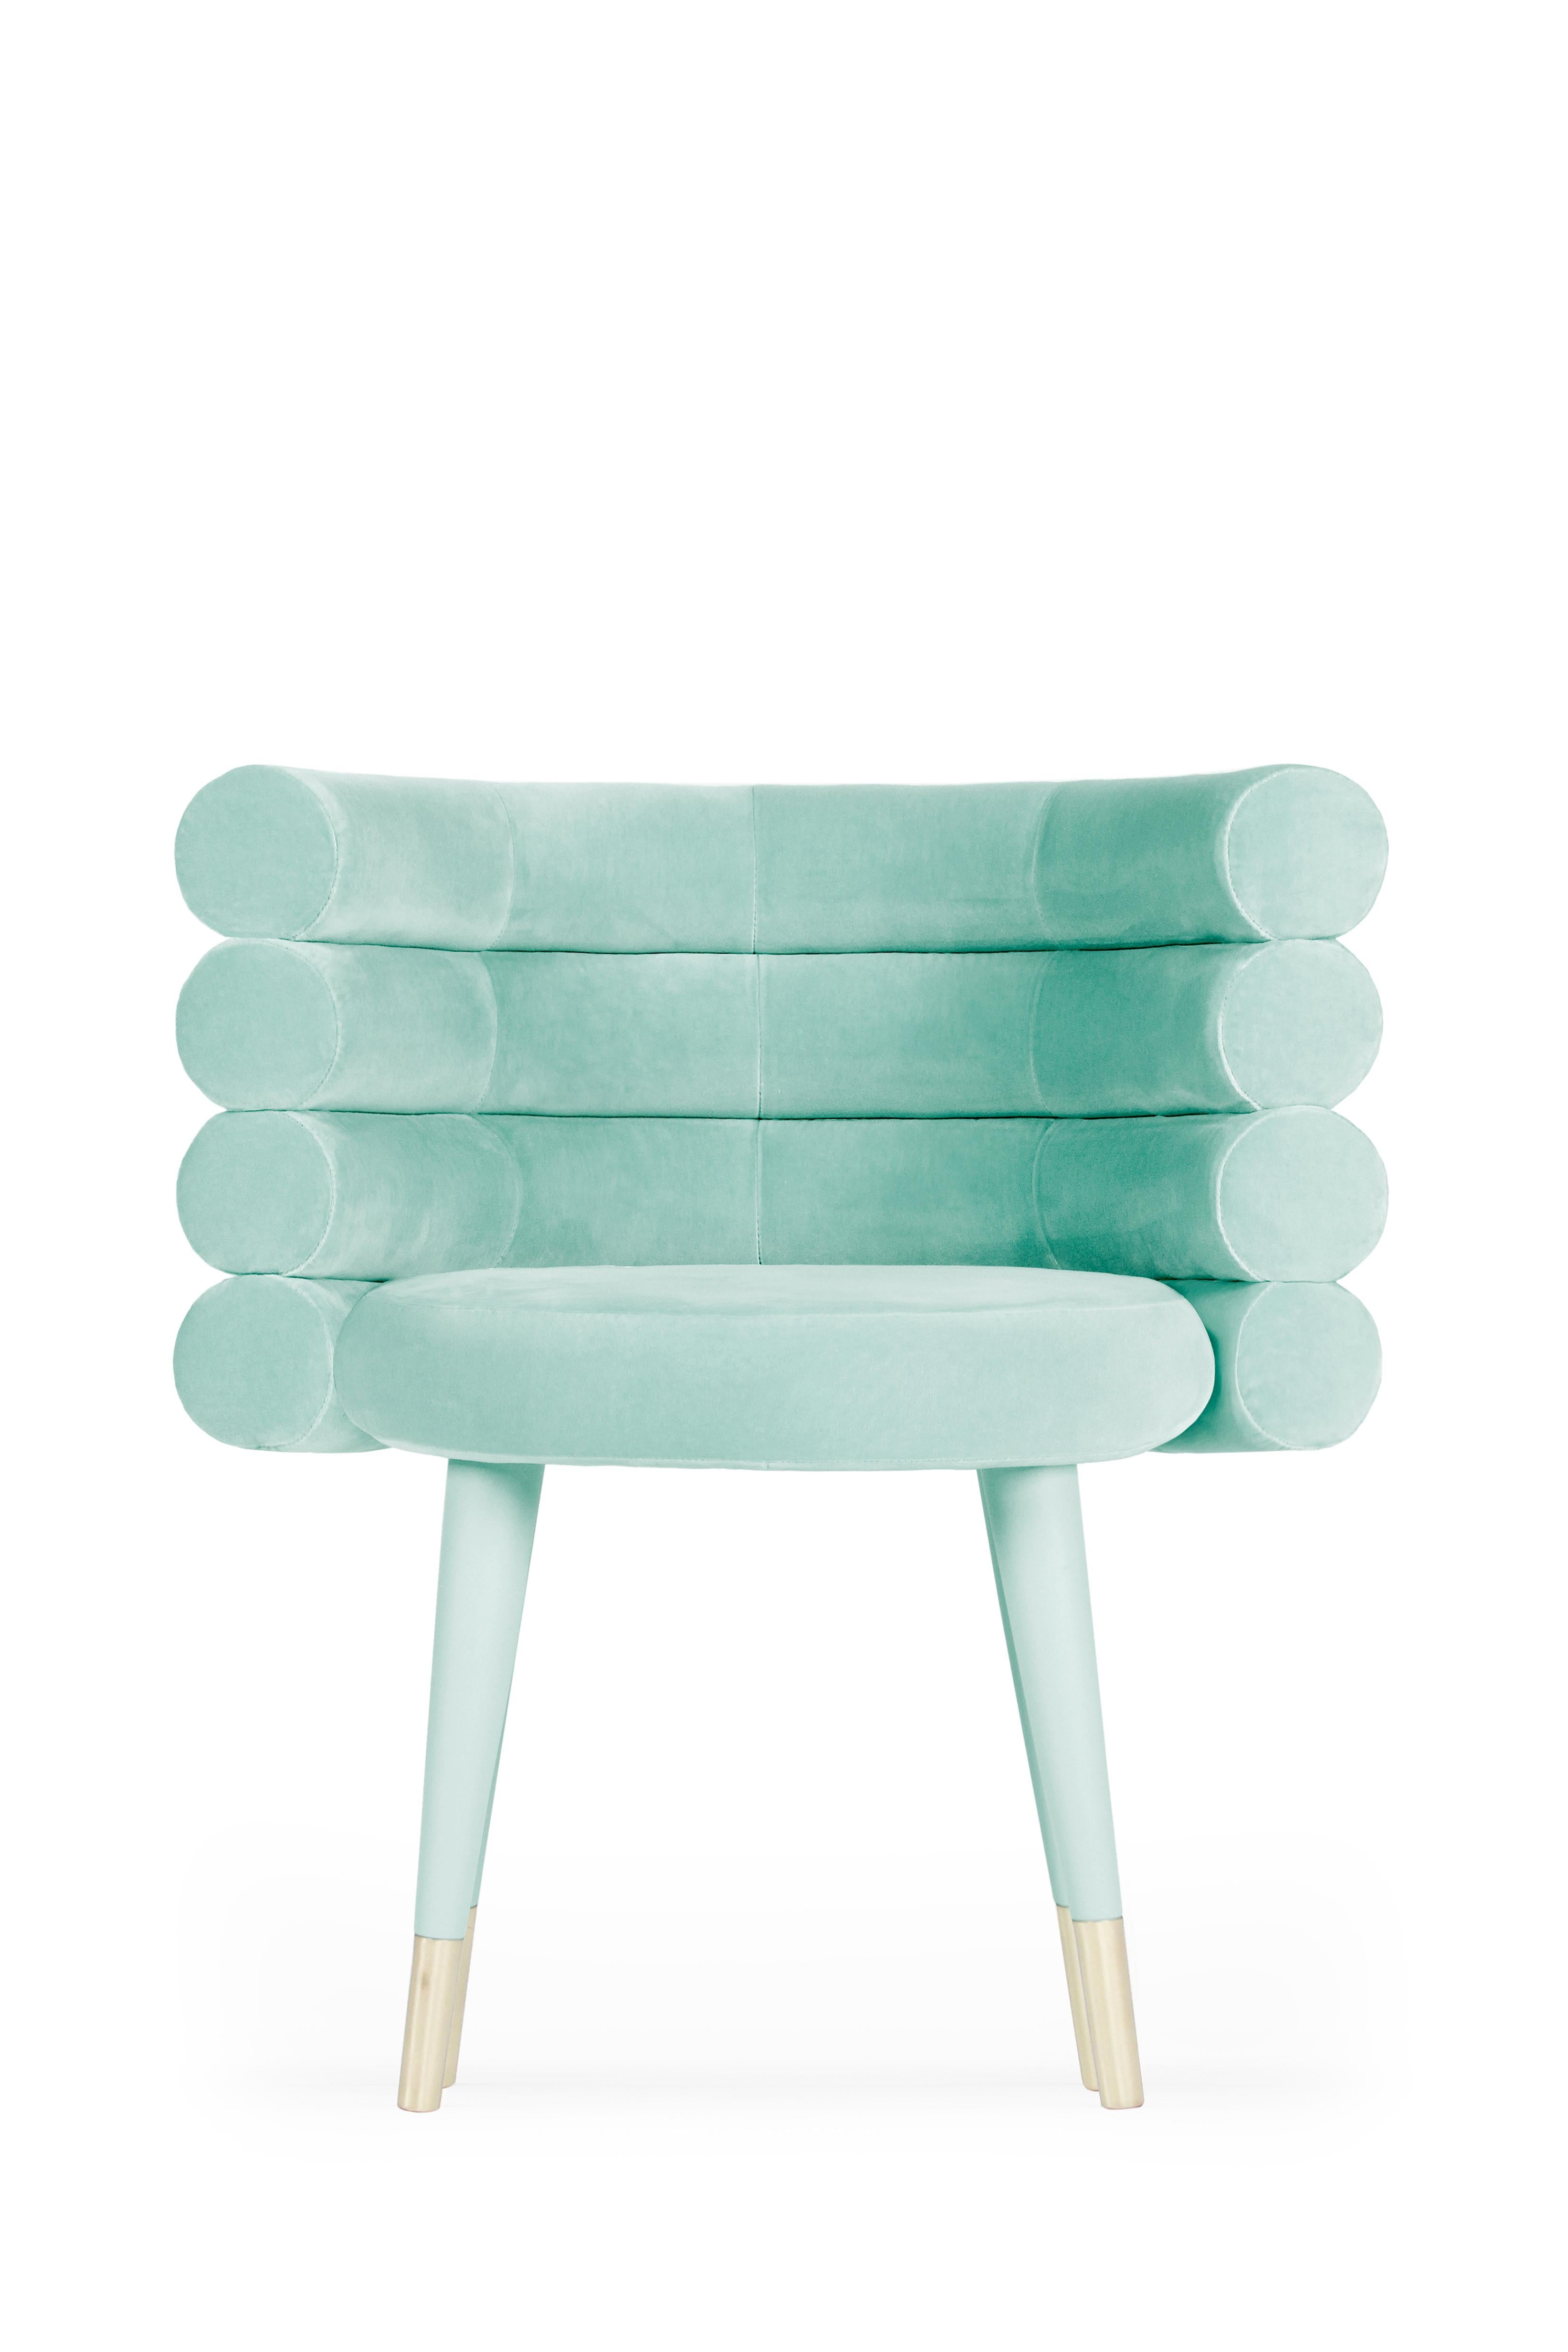 Modern Marshmallow Dining Chair, Royal Stranger For Sale